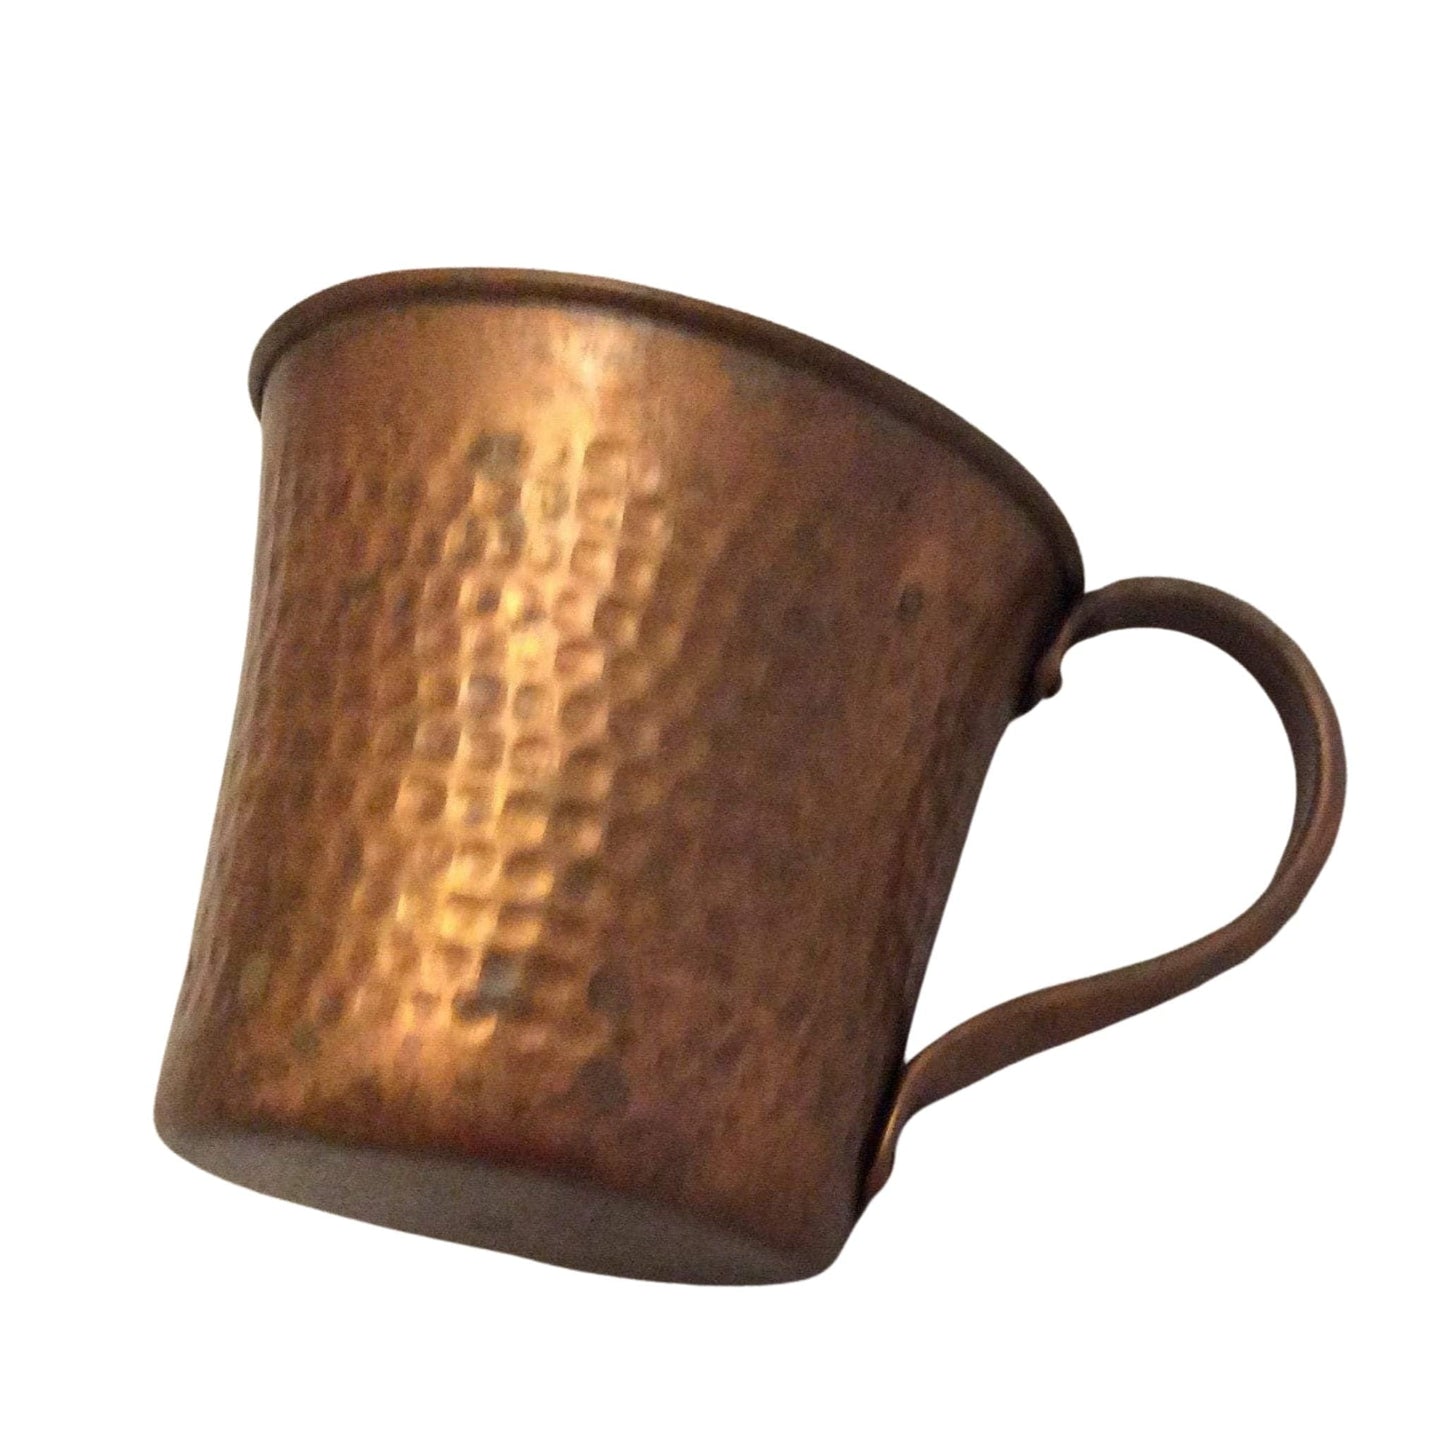 Vintage Rustic Copper Cup Copper / Copper / Vintage 1950s